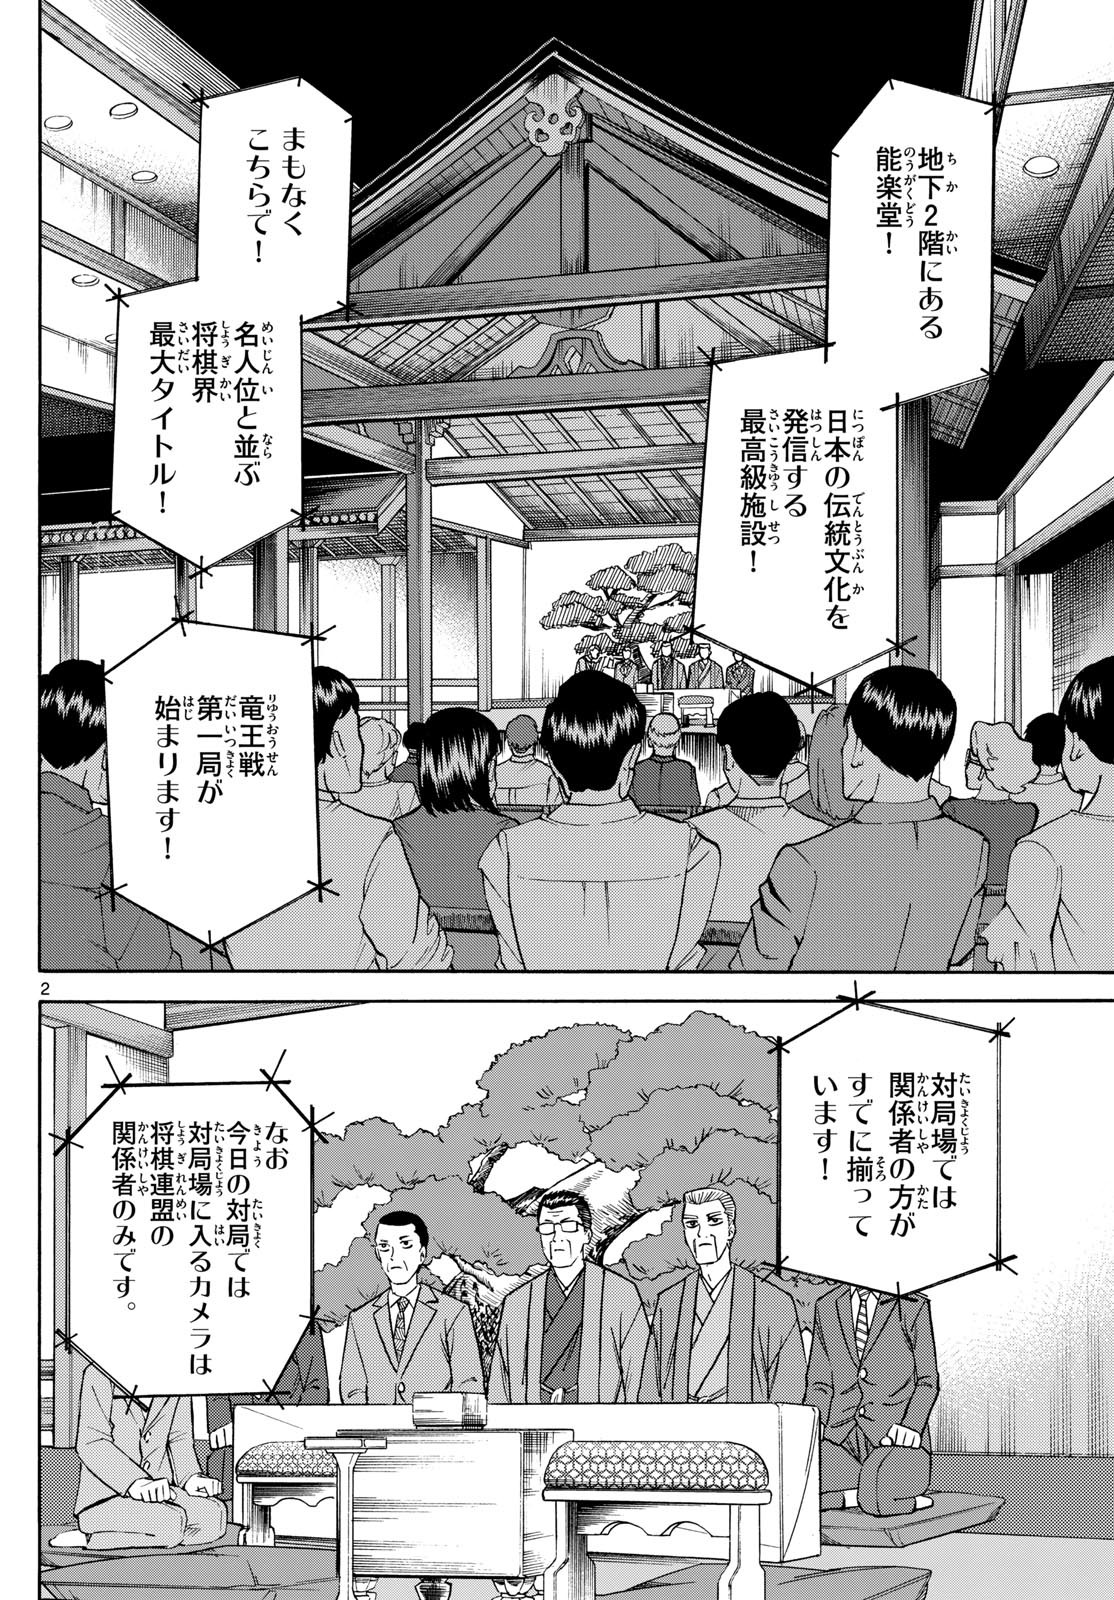 Ryu-to-Ichigo - Chapter 154 - Page 2